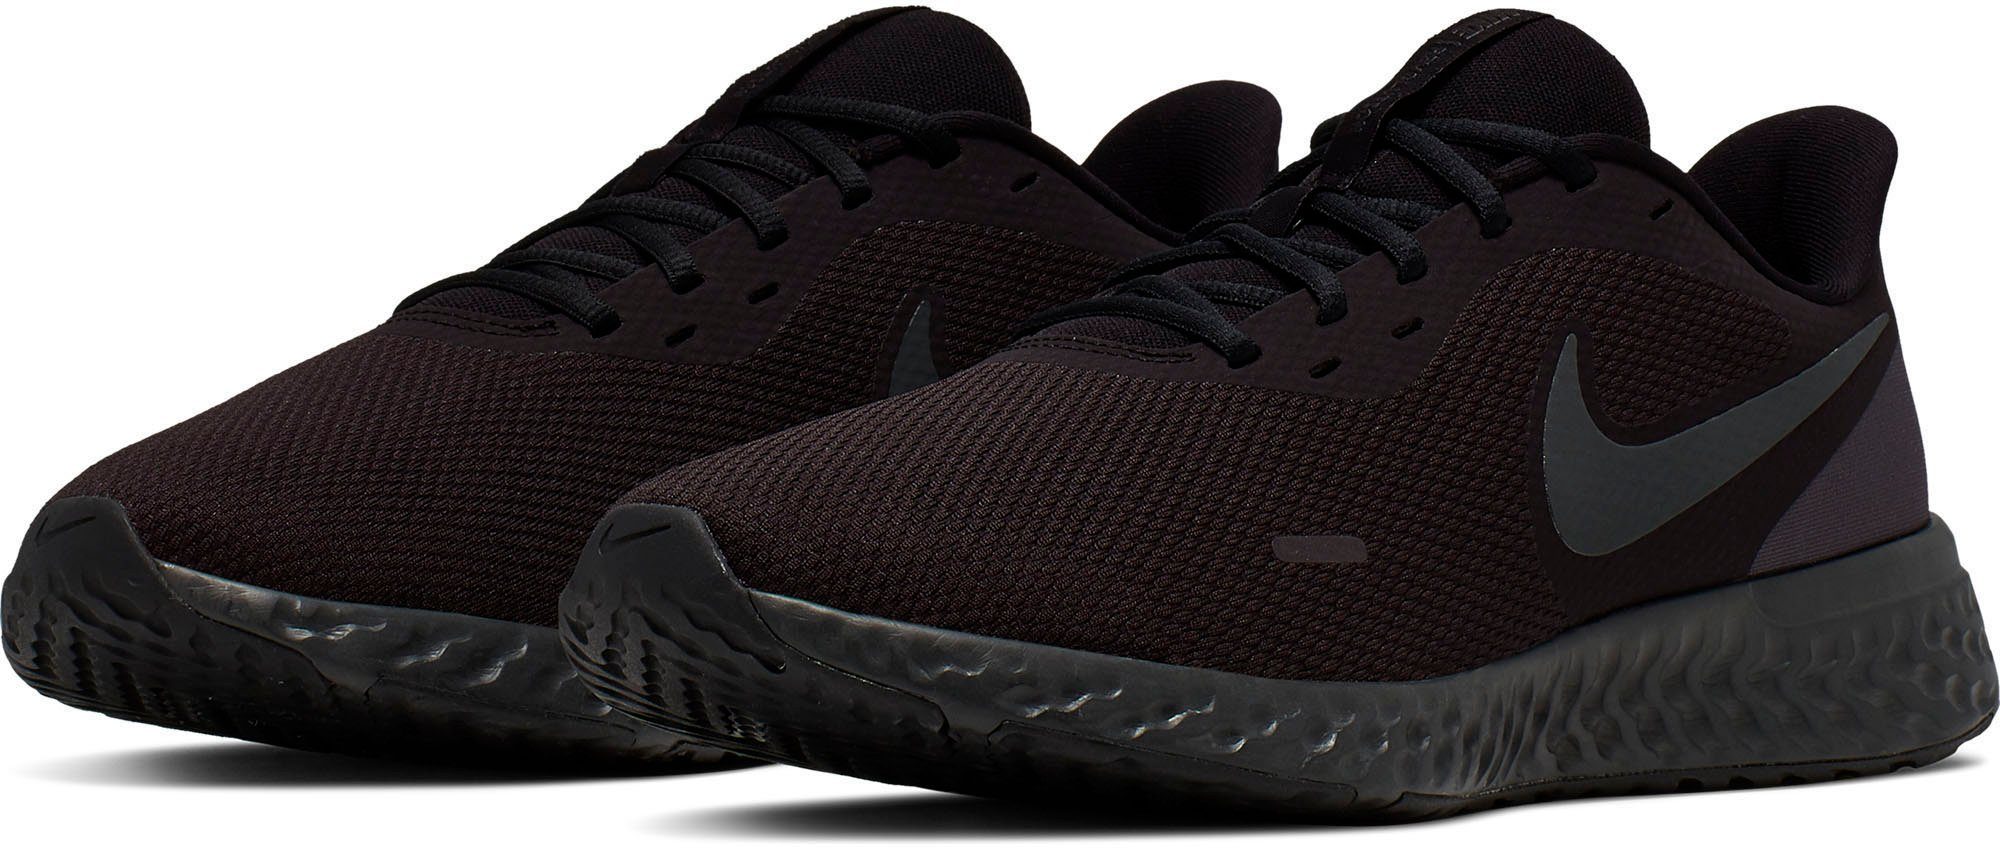 Nike »Revolution 5 extra wide« Laufschuh, Leichter Laufschuh von Nike im  minimalistischem Design online kaufen | OTTO